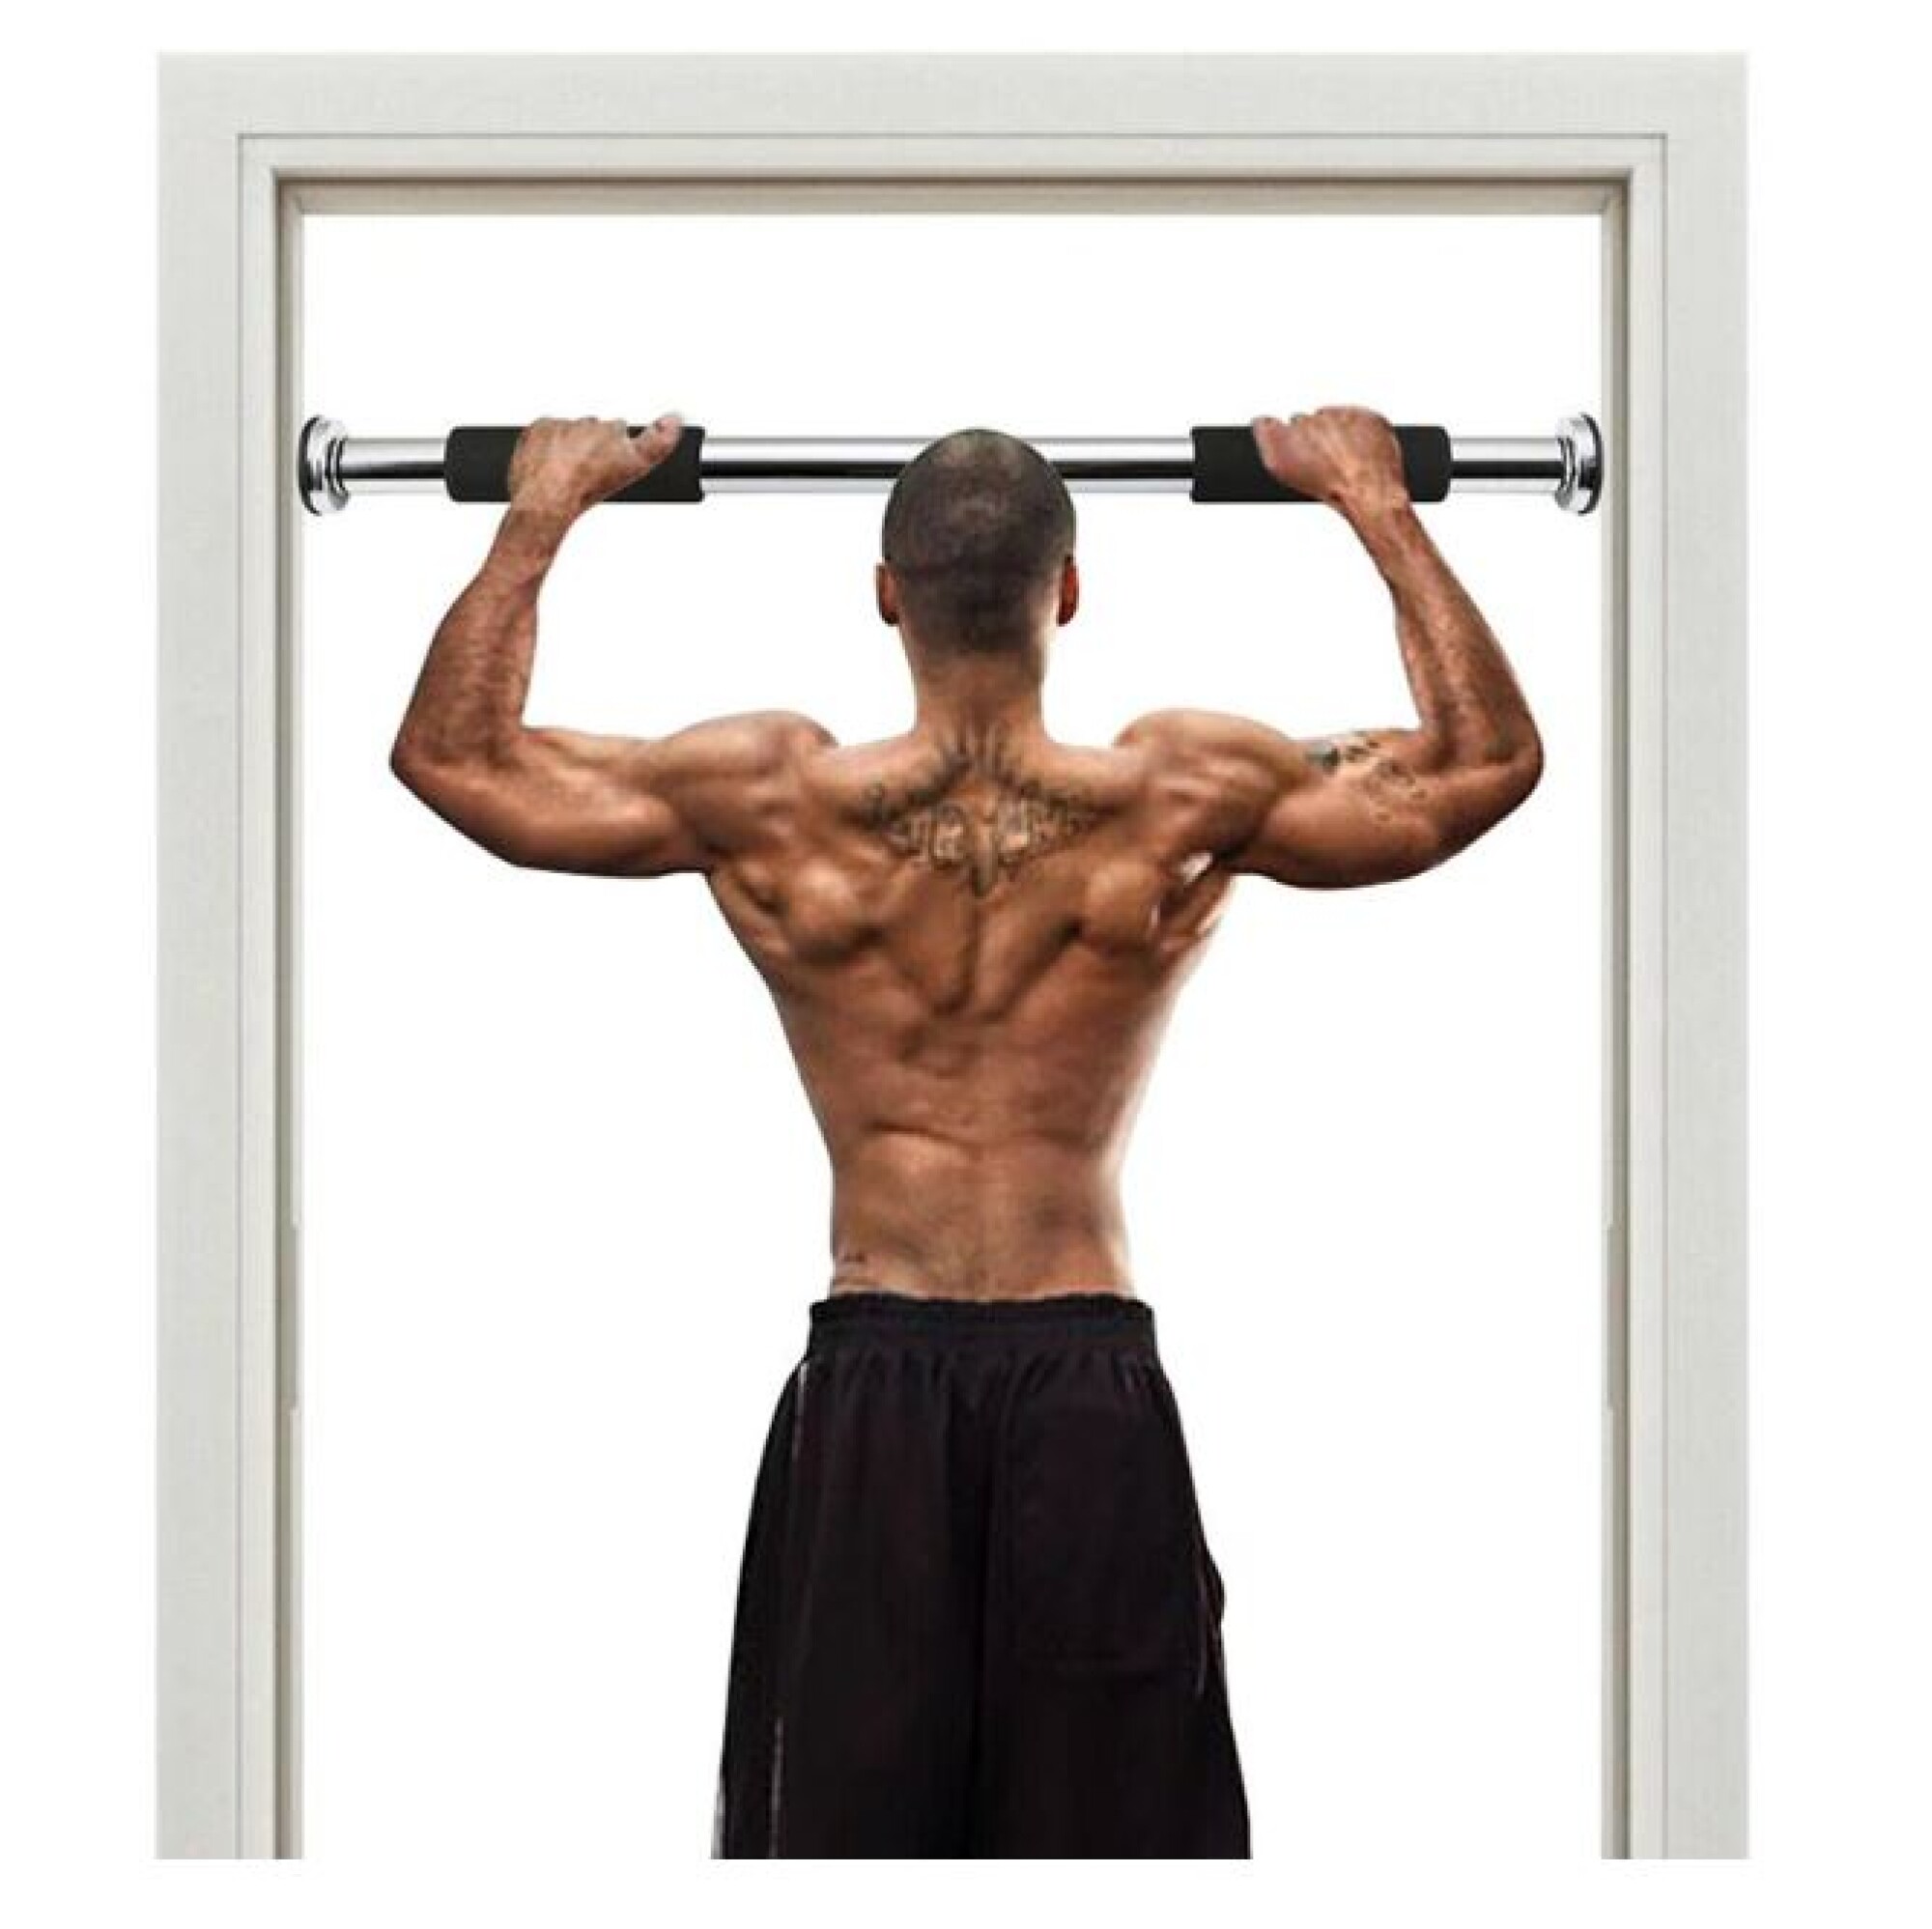 https://f.fcdn.app/imgs/c23113/unaganga.com.uy/unaguy/97ec/original/catalogo/211104_211104_5/2000-2000/barra-ejercicio-para-puertas-dominadas-entrenamiento-fitness-barra-ejercicio-para-puertas-dominadas-entrenamiento-fitness.jpg